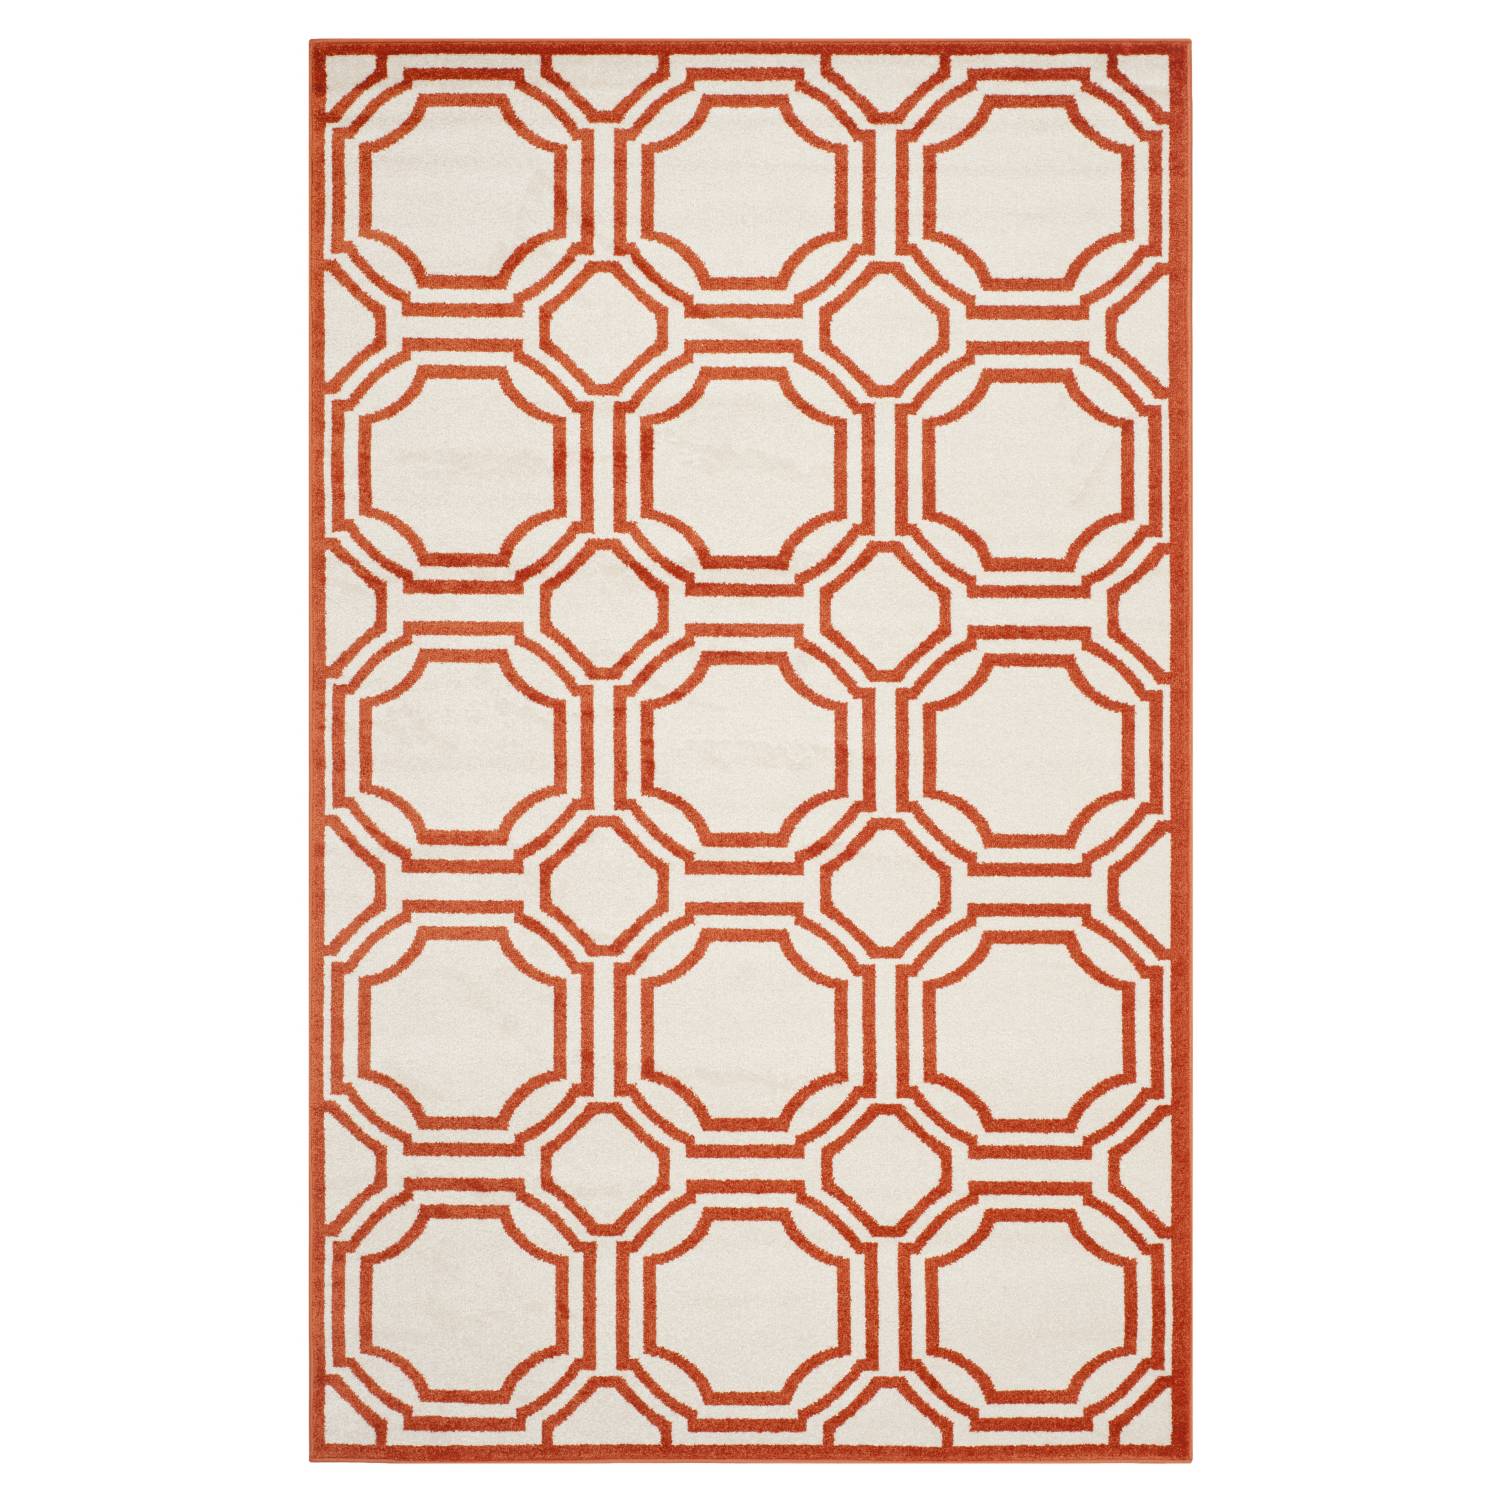 In-/Outdoorteppich Ferrat - Creme/Orange - MaÃŸe: 121 x 182 cm, Safavieh